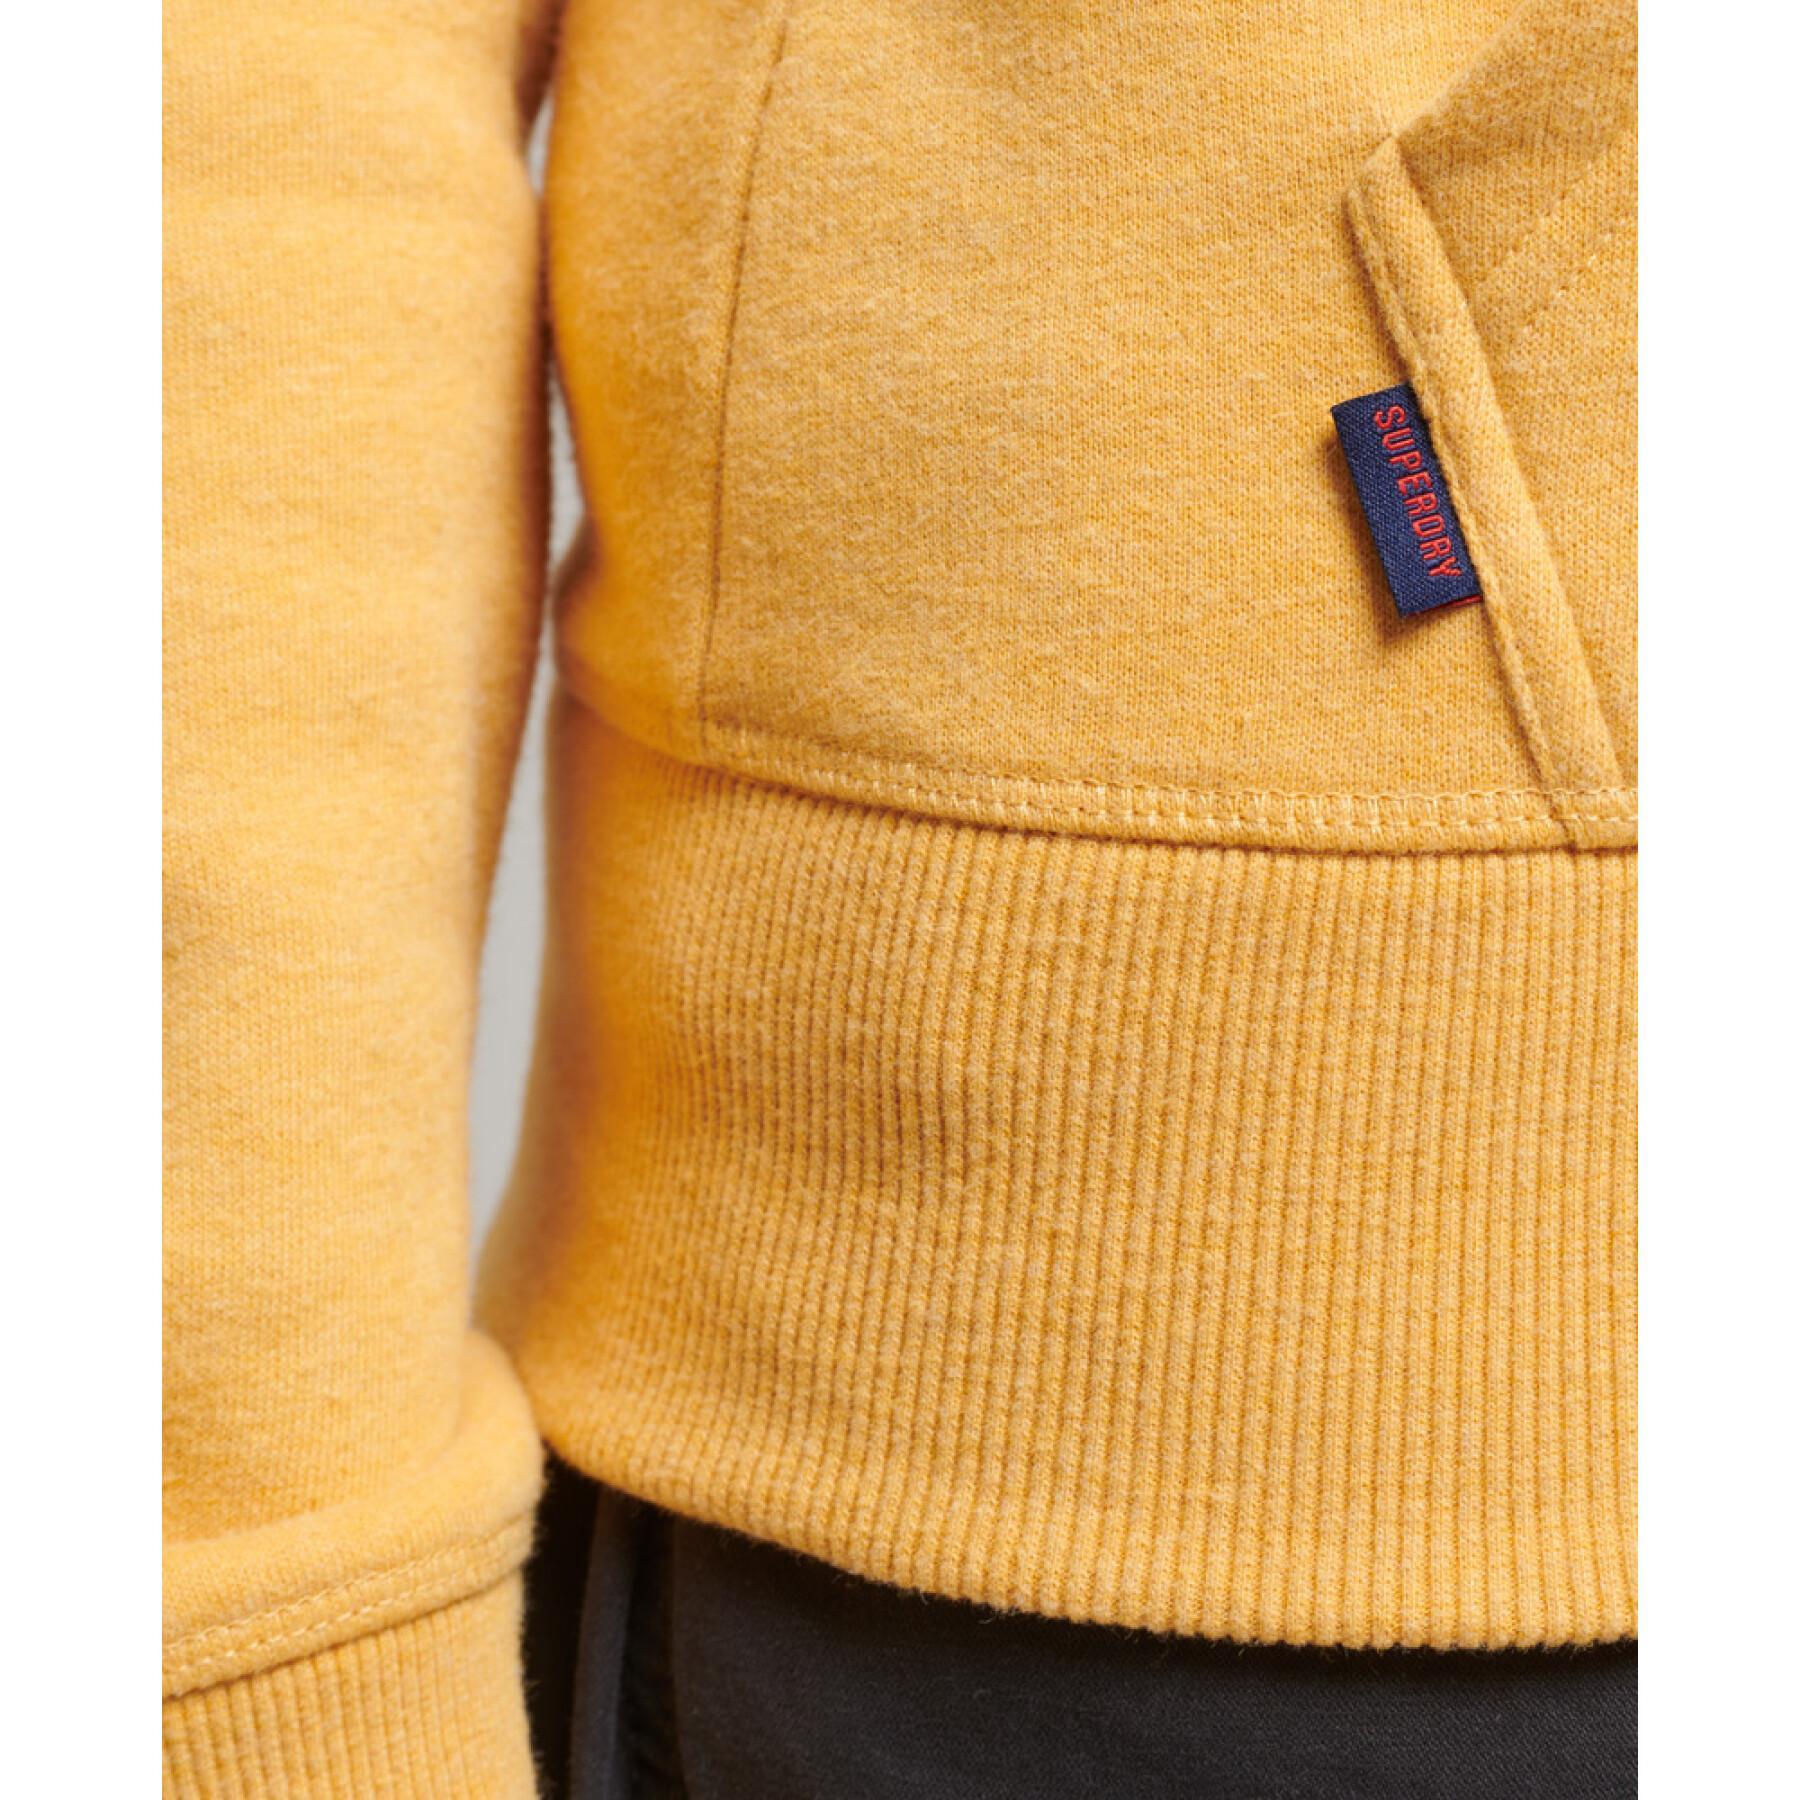 Sweatshirt zippé à capuche en coton bio femme Superdry Vintage Logo